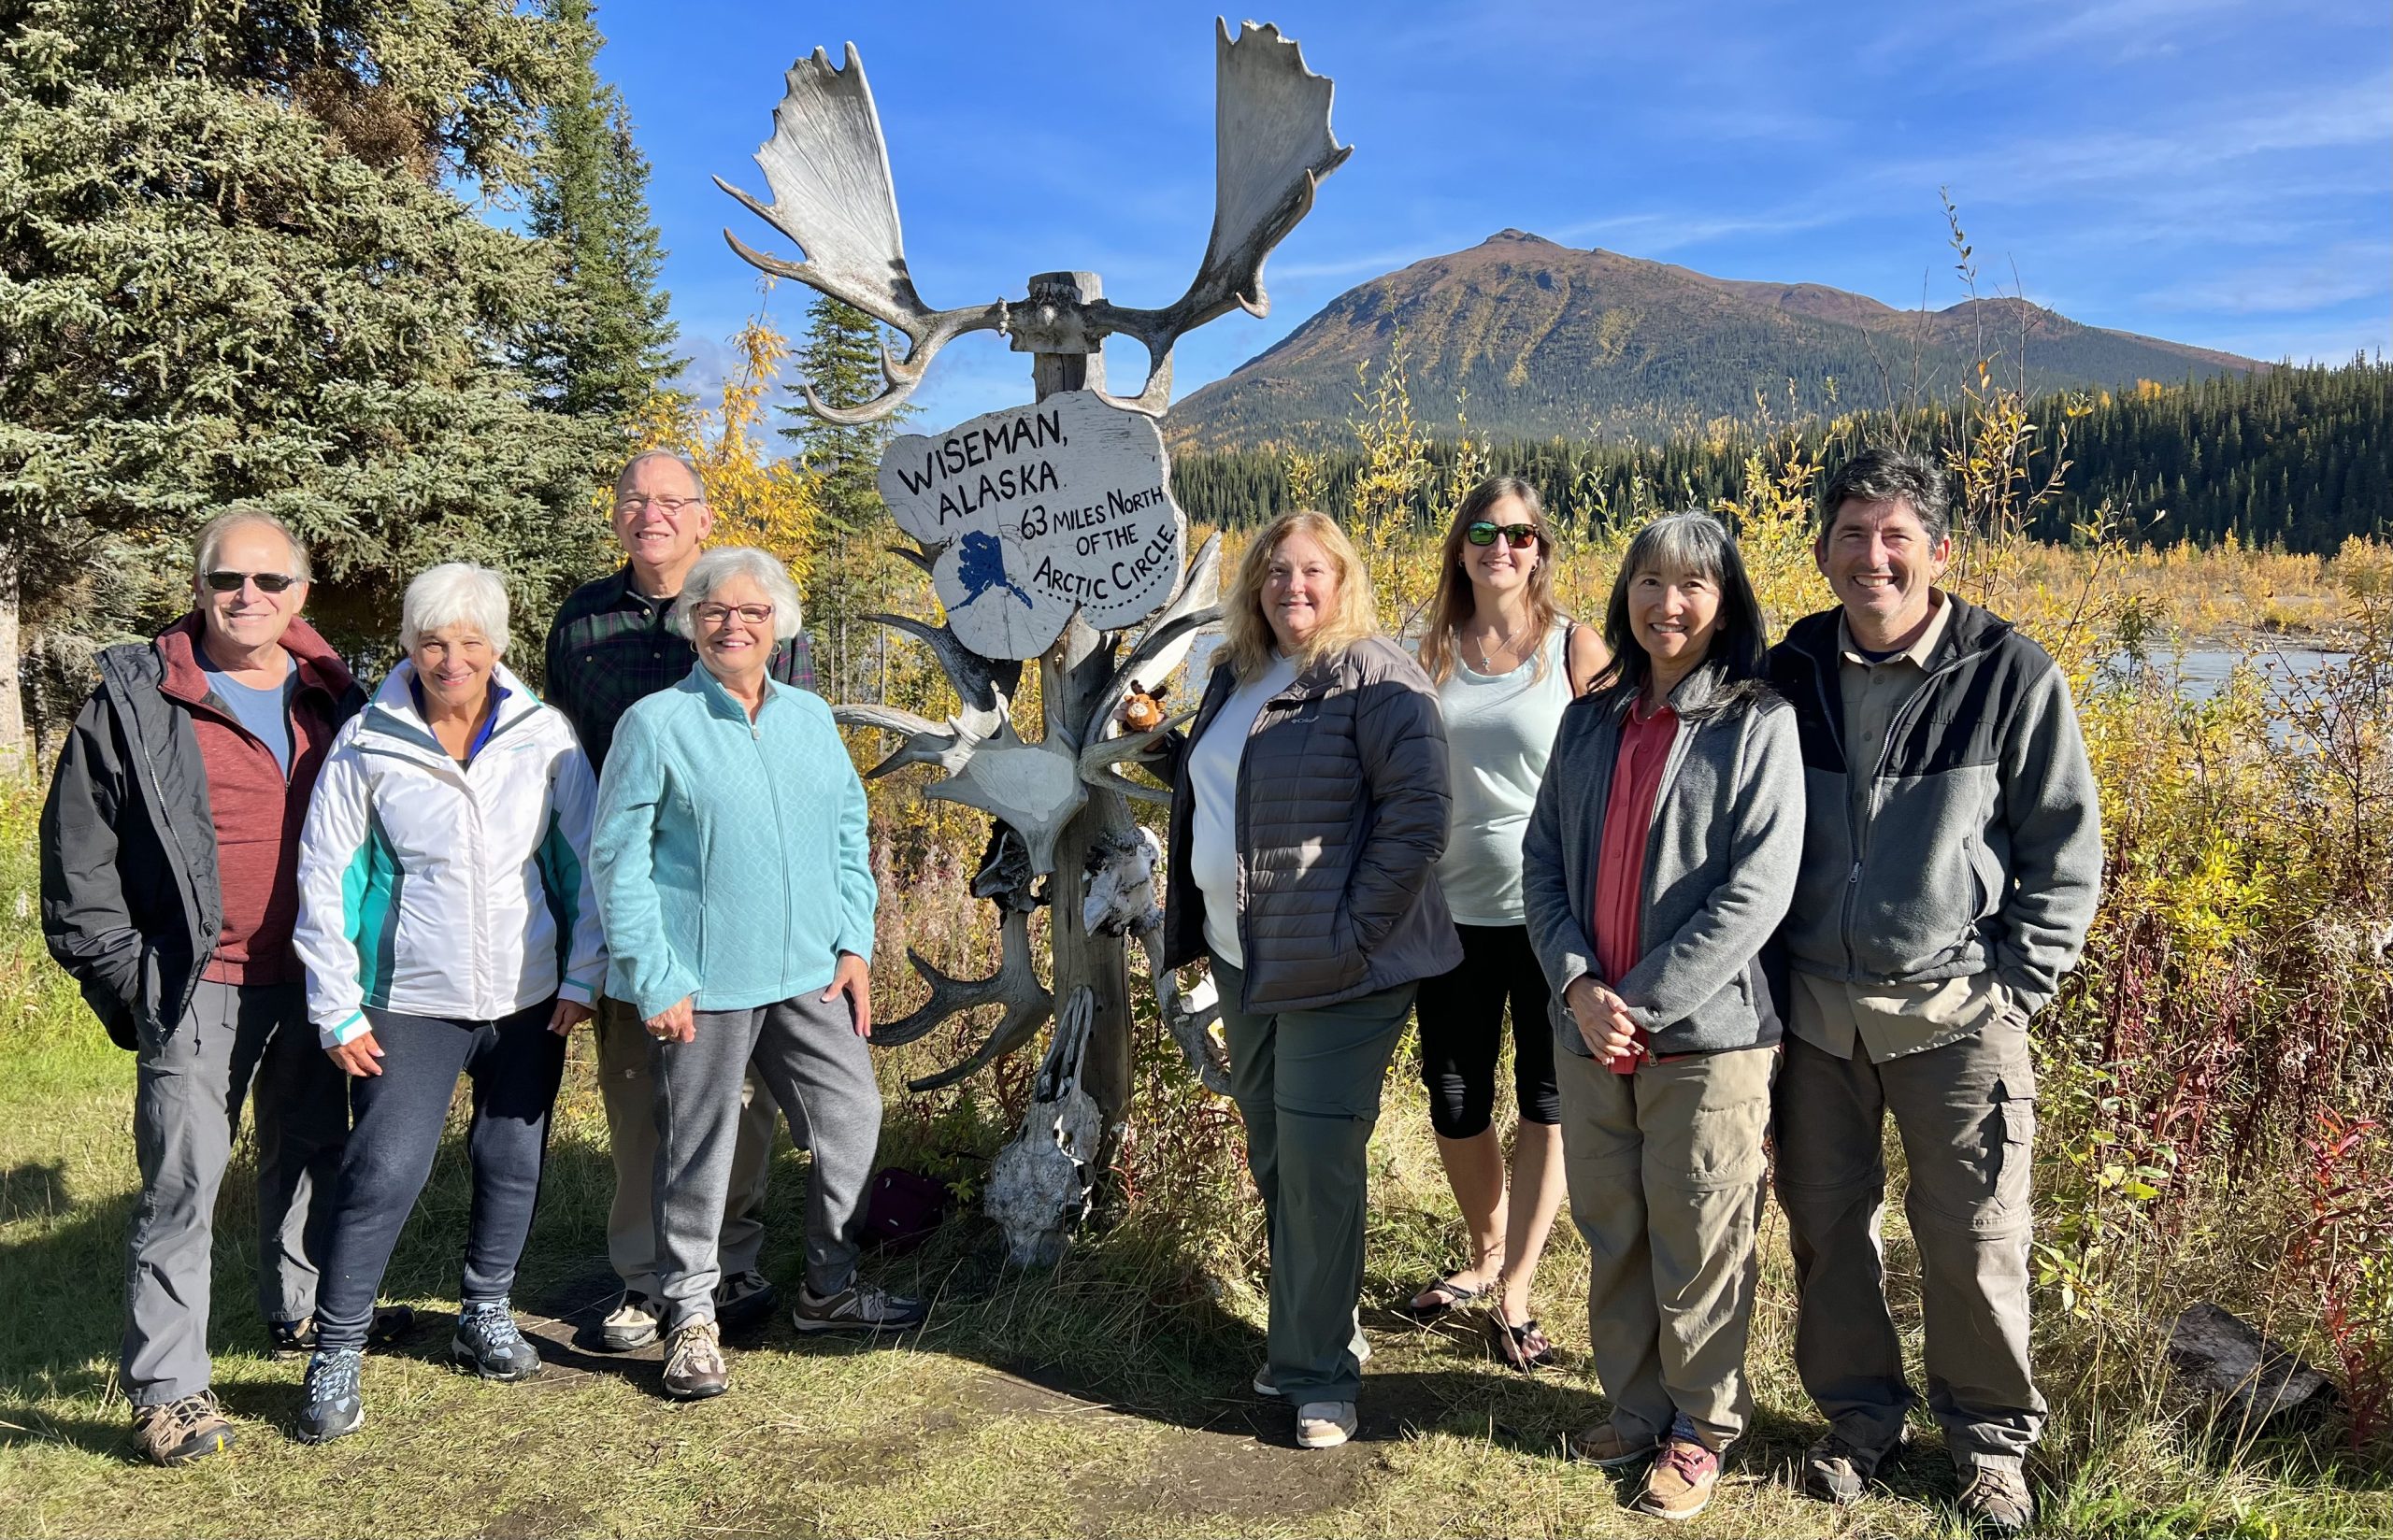 Wild Alaska Travel group in Wisman